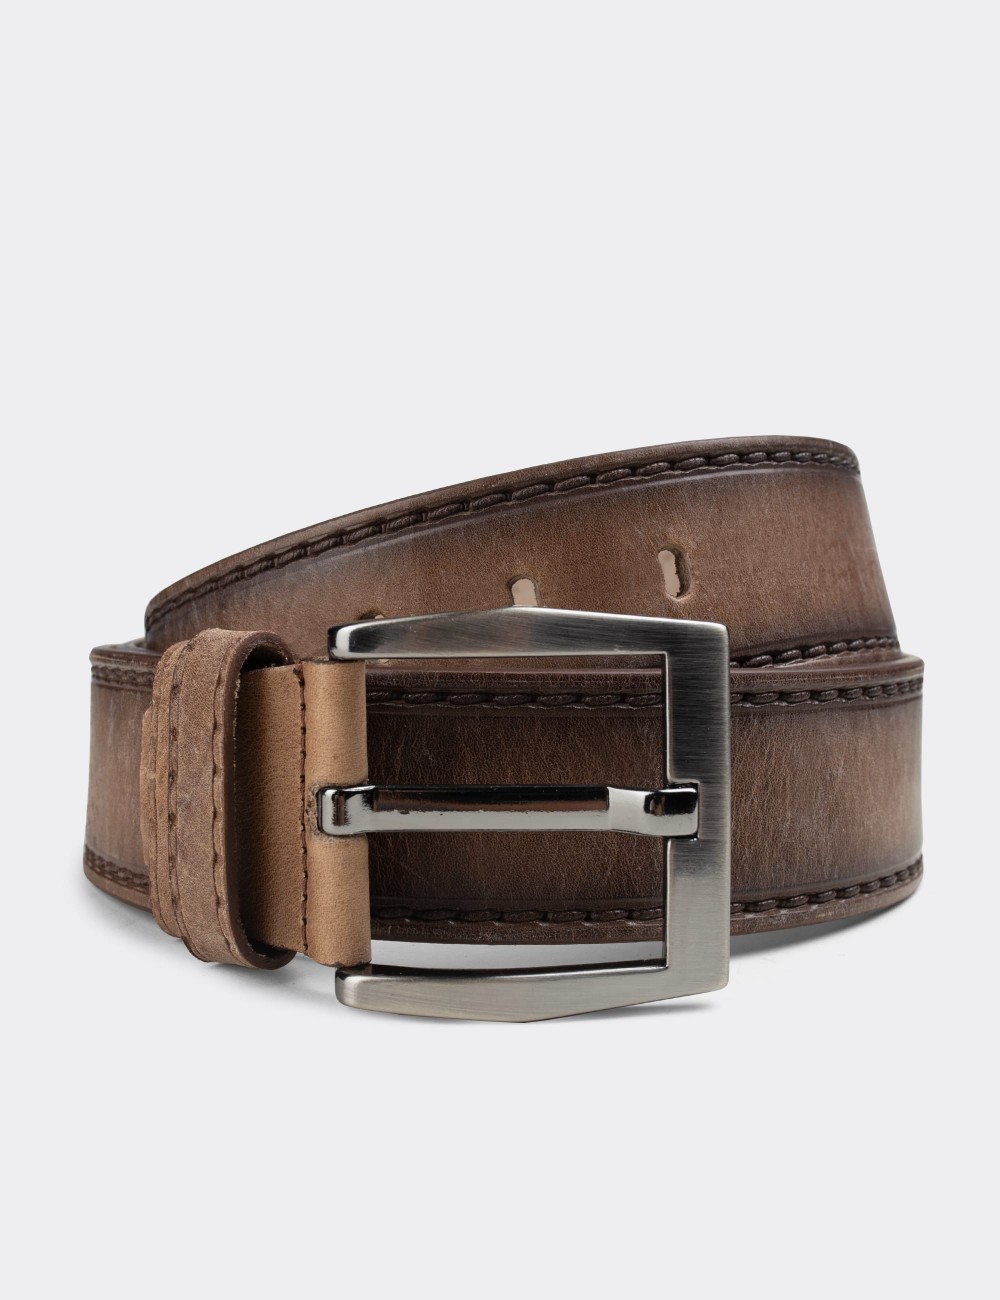  Leather Sandstone Vintage Men's Belt - K0107MVZNW01